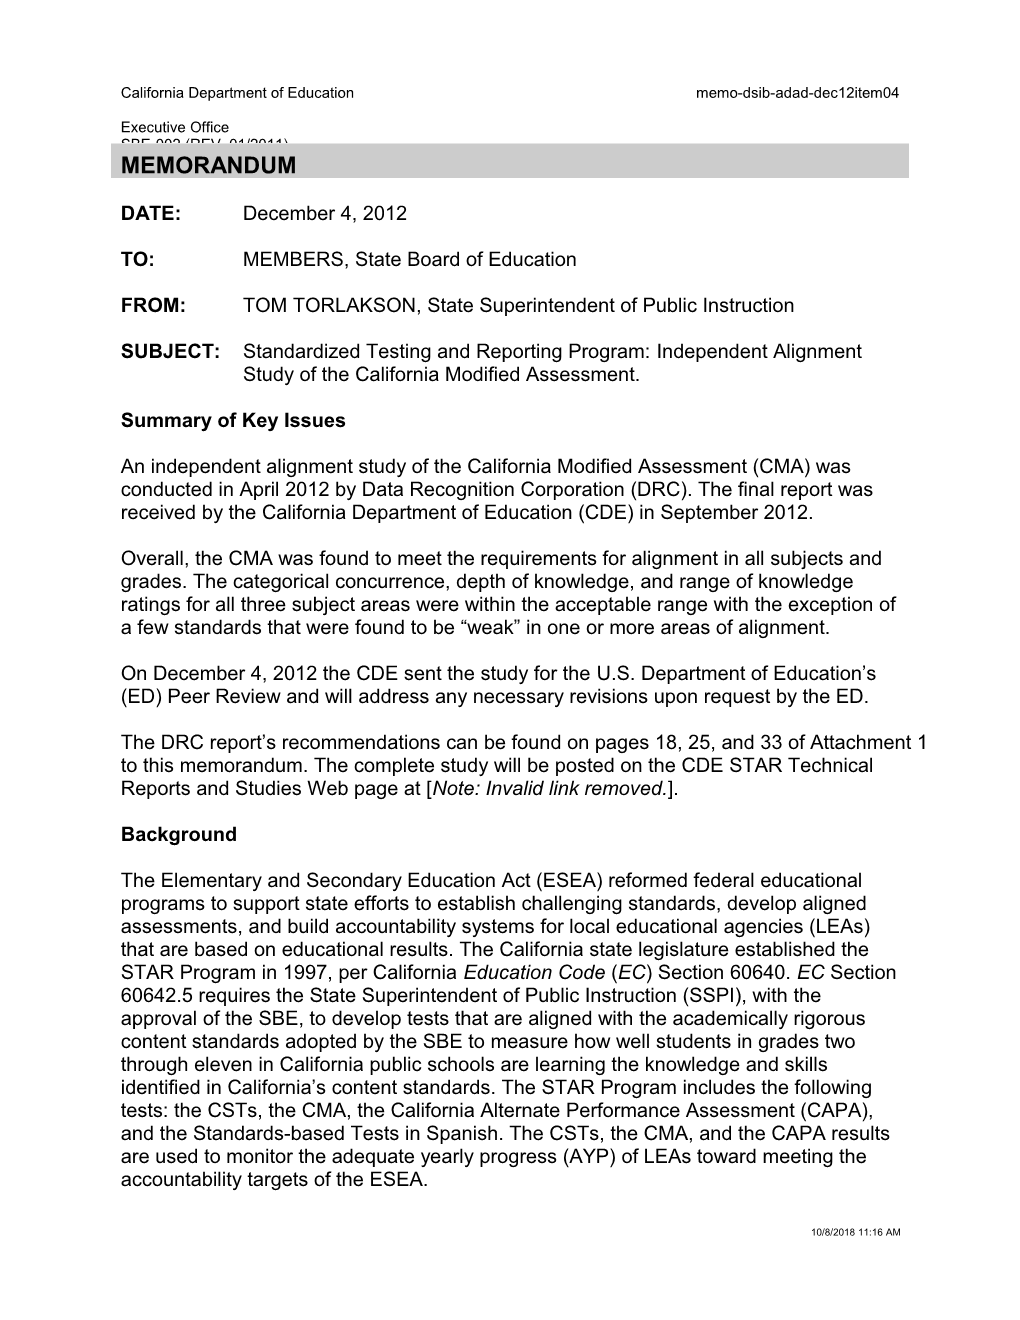 December 2012 Memorandum Item 4 - Information Memorandum (CA State Board of Education)